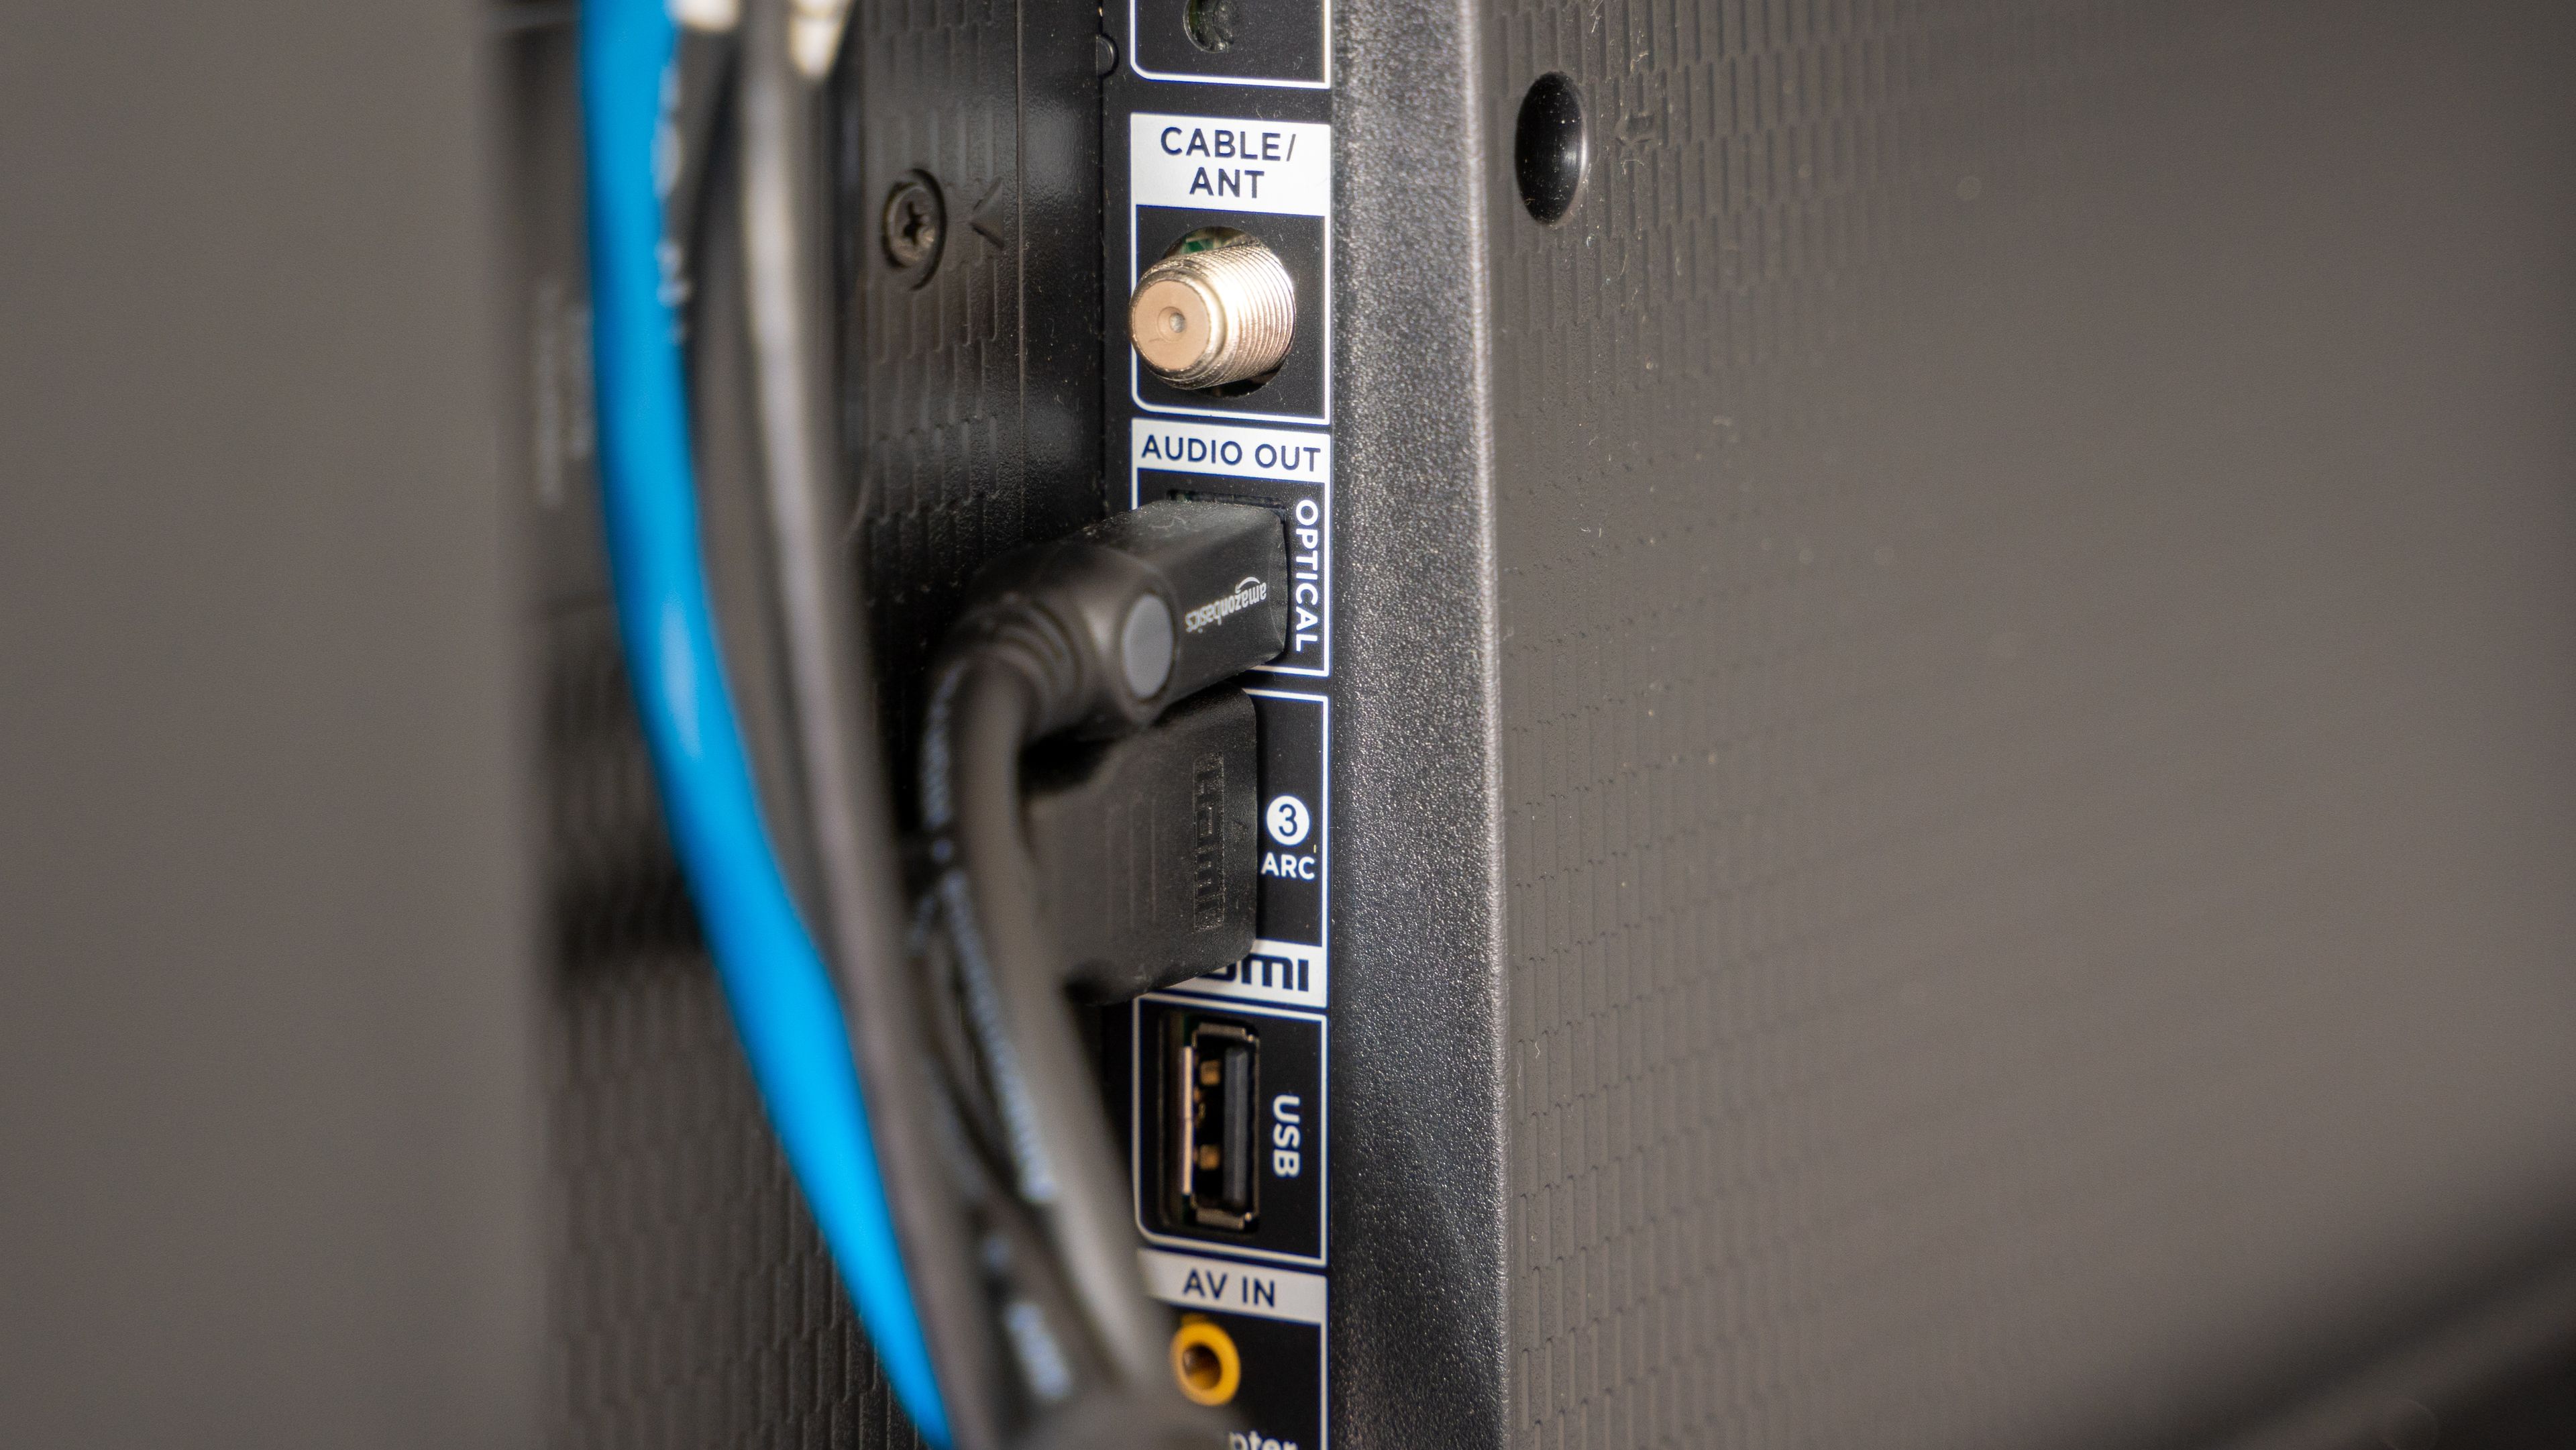 Para qué sirven los puertos USB que están detrás del televisor?